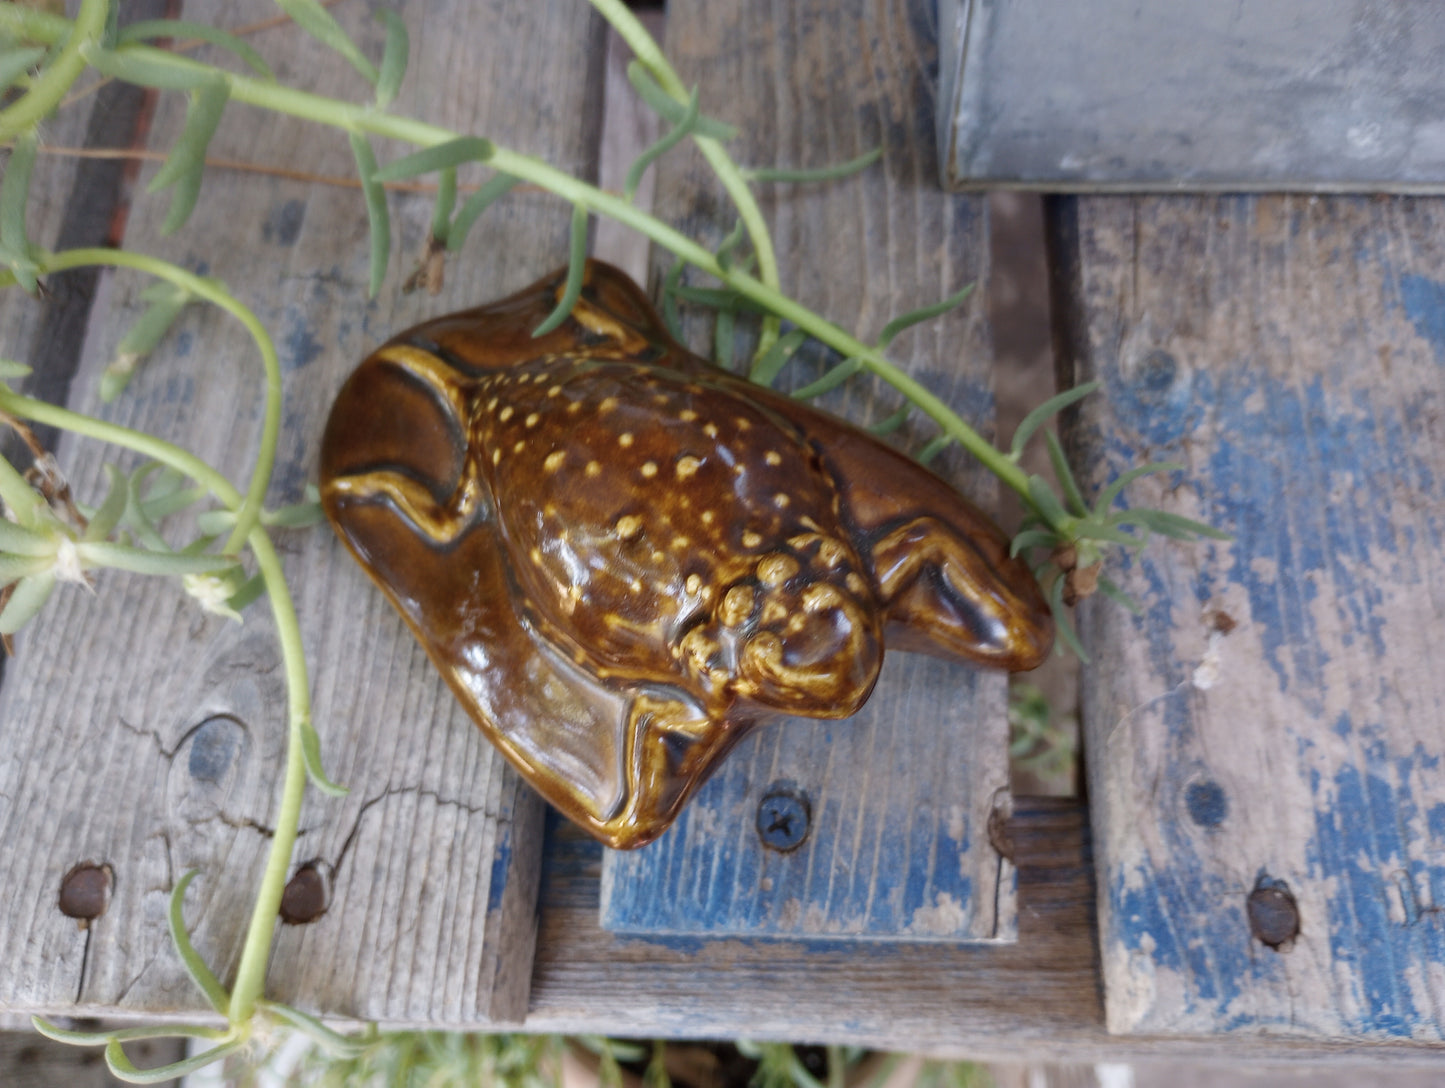 Cool vintage ceramic Horney Toad